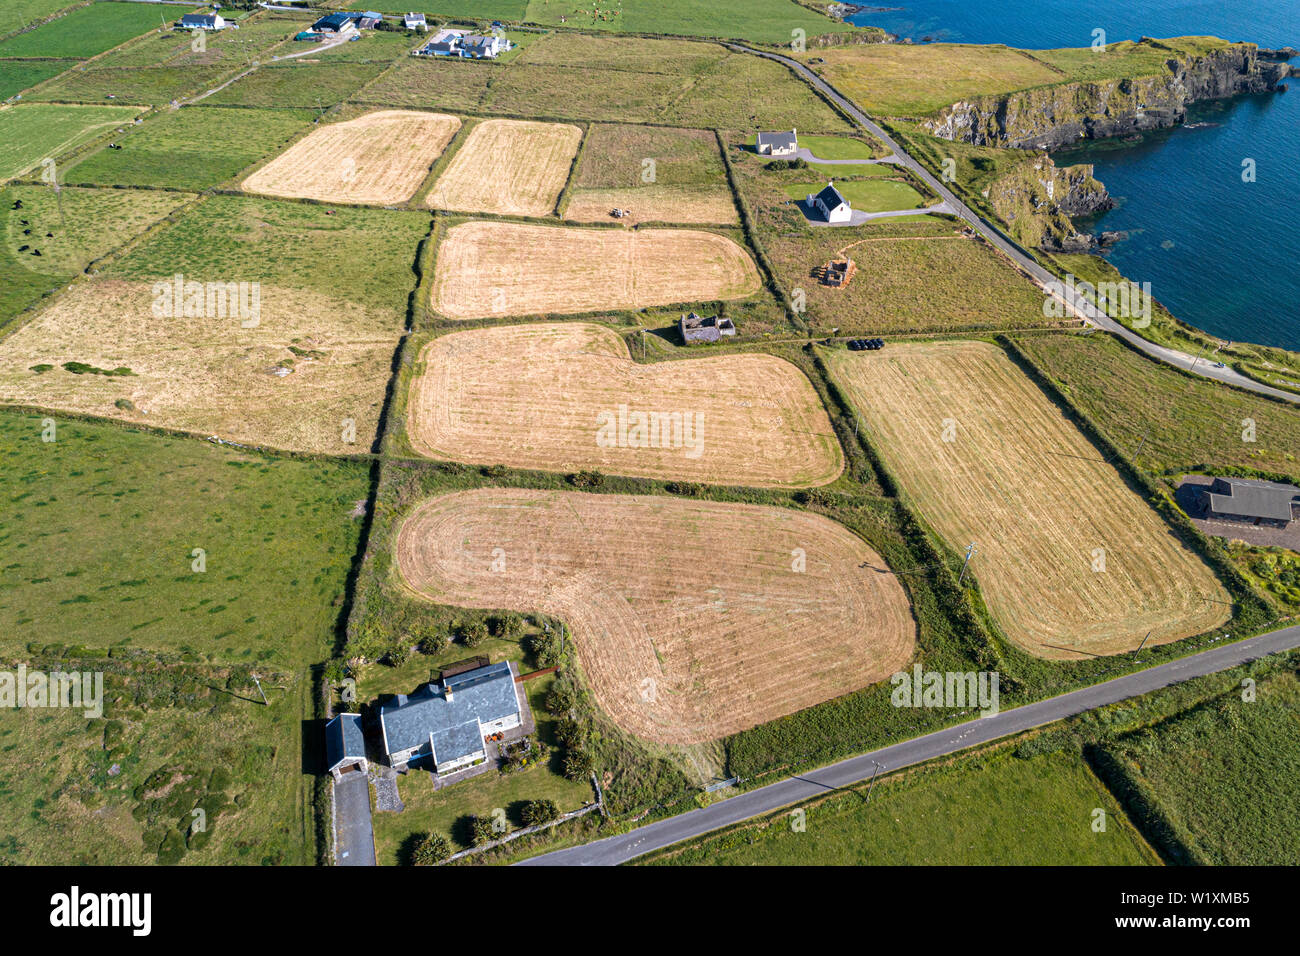 Vue aérienne des terres agricoles avec des champs fauchés et fraîchement coupée, l'île de Valentia, comté de Kerry, Irlande Banque D'Images